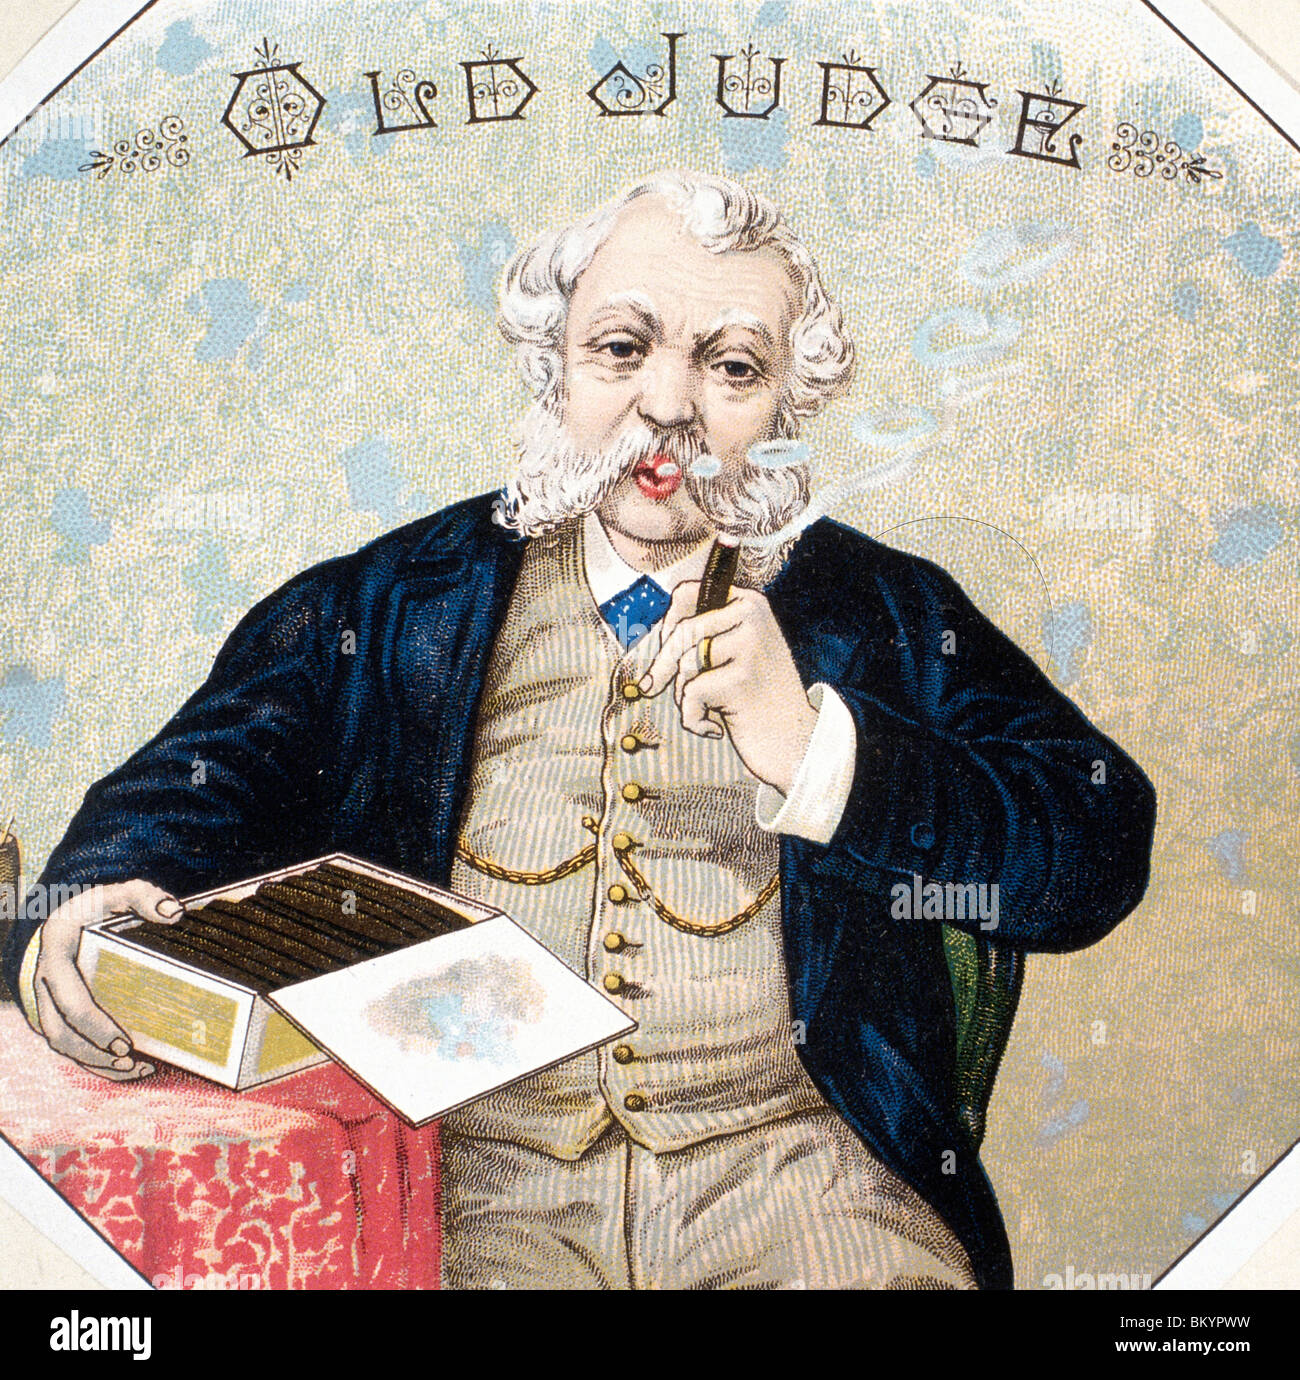 Ancien juge, étiquettes de boîtes à cigares, 19e siècle Banque D'Images